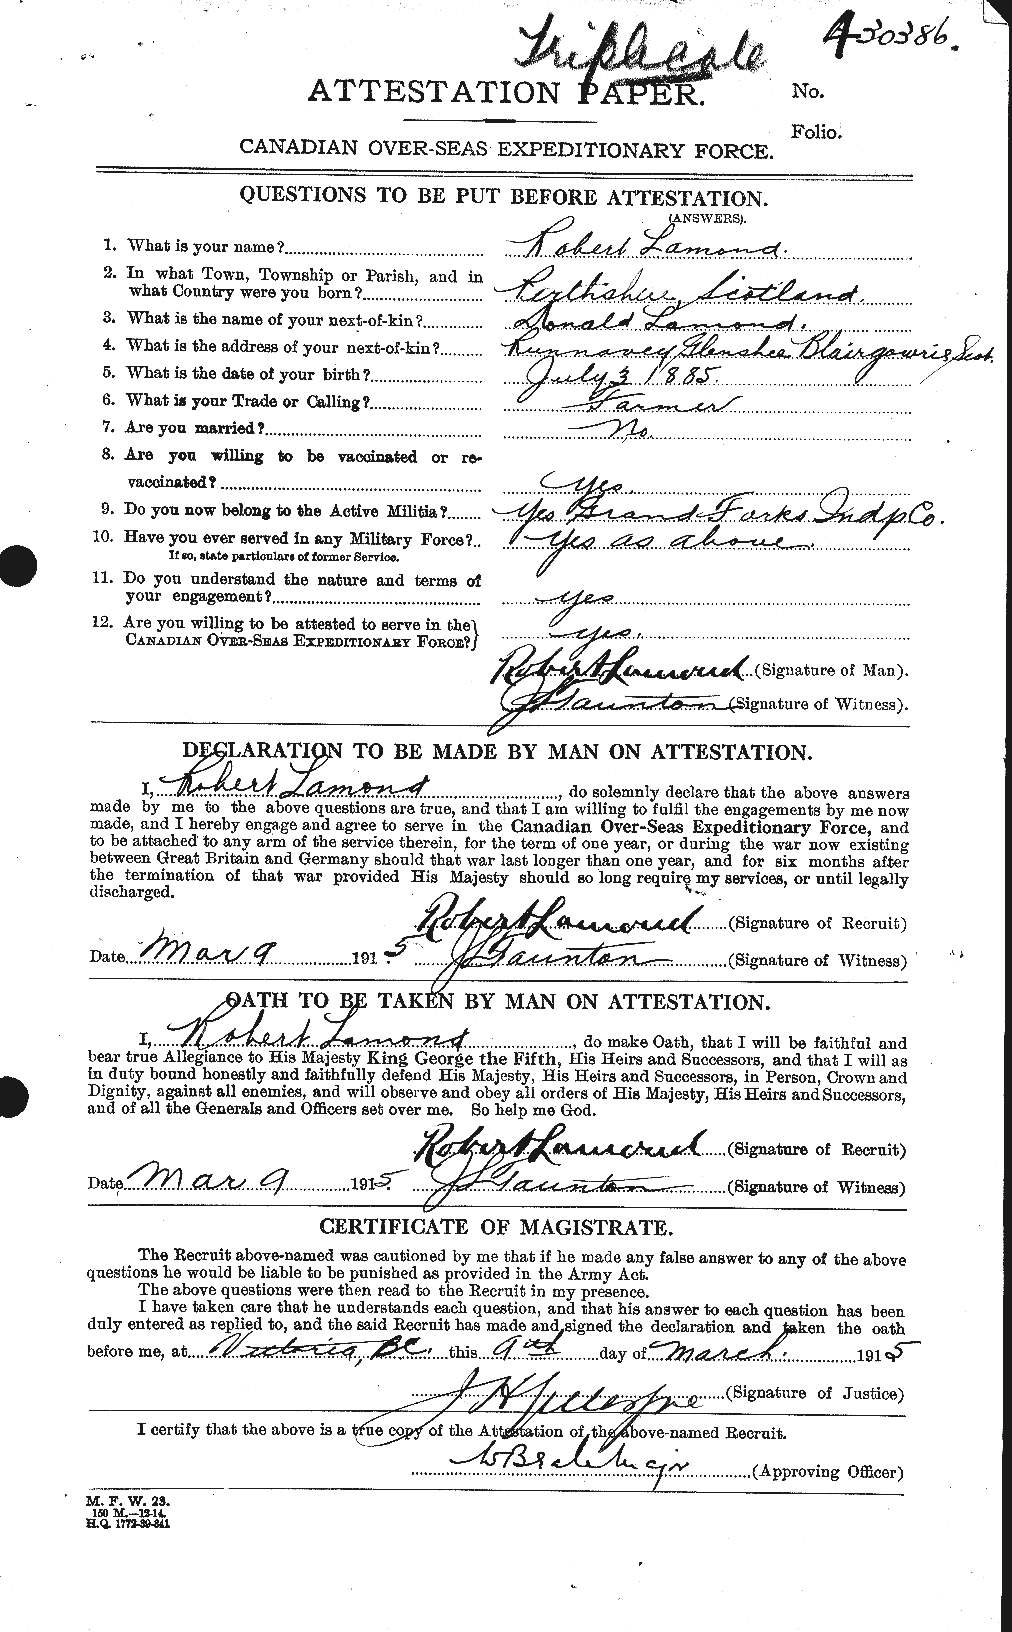 Dossiers du Personnel de la Première Guerre mondiale - CEC 446087a